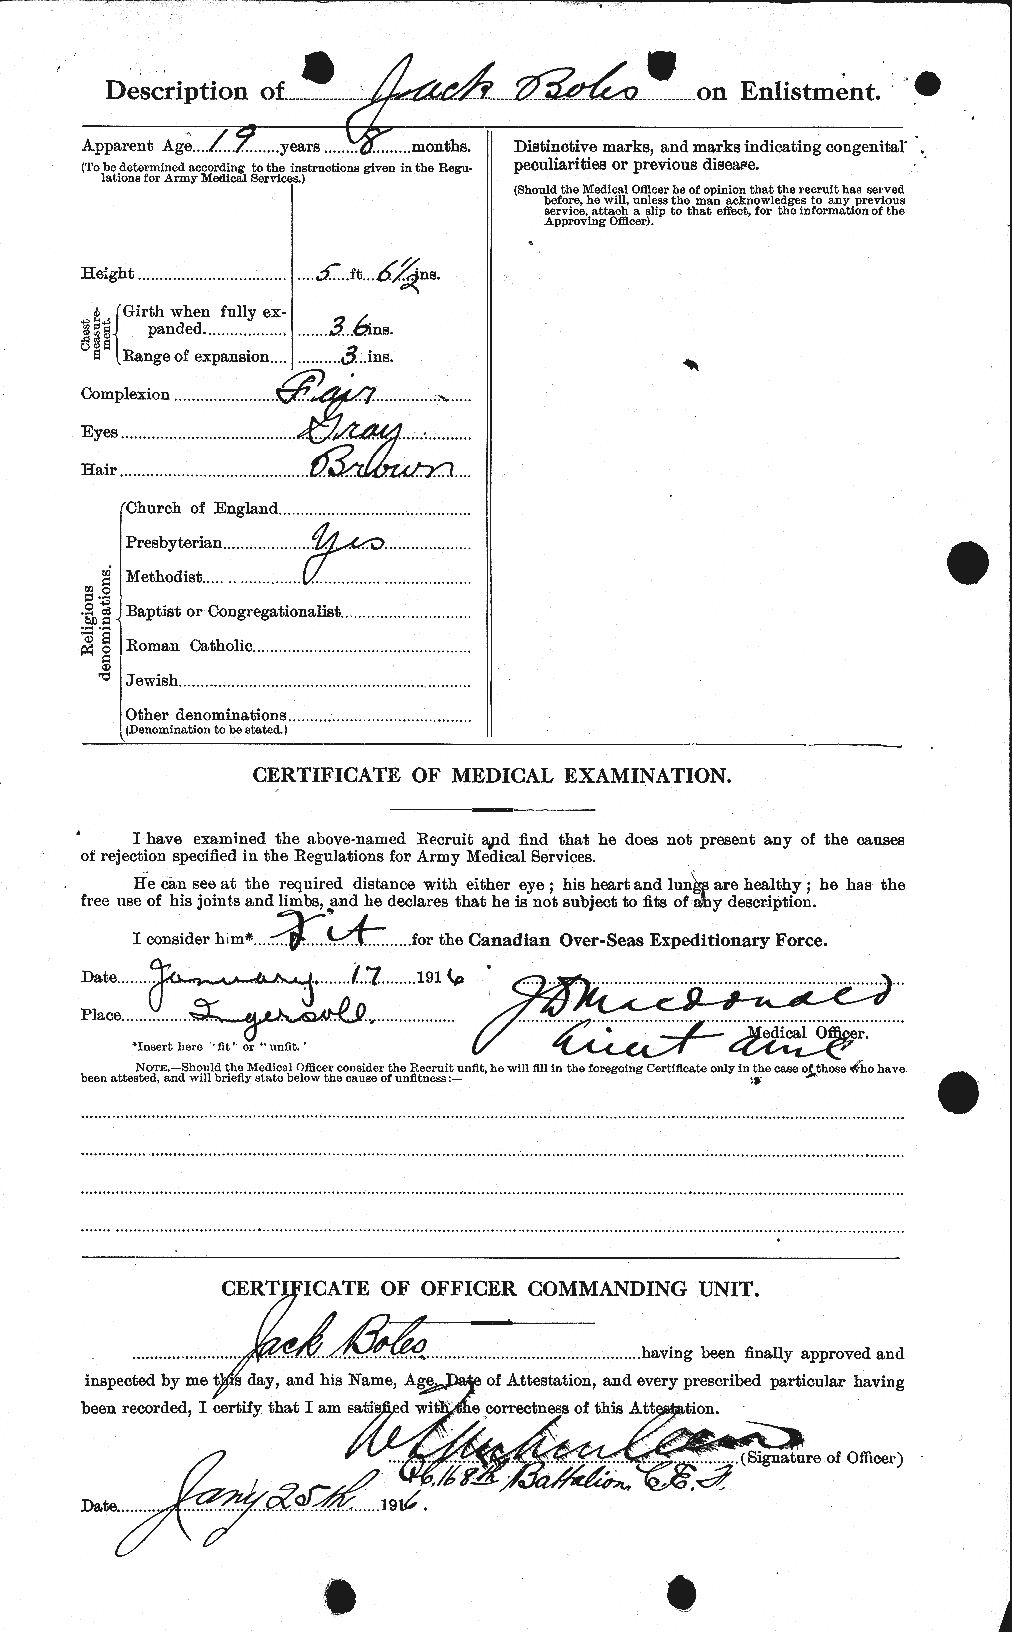 Dossiers du Personnel de la Première Guerre mondiale - CEC 249817b